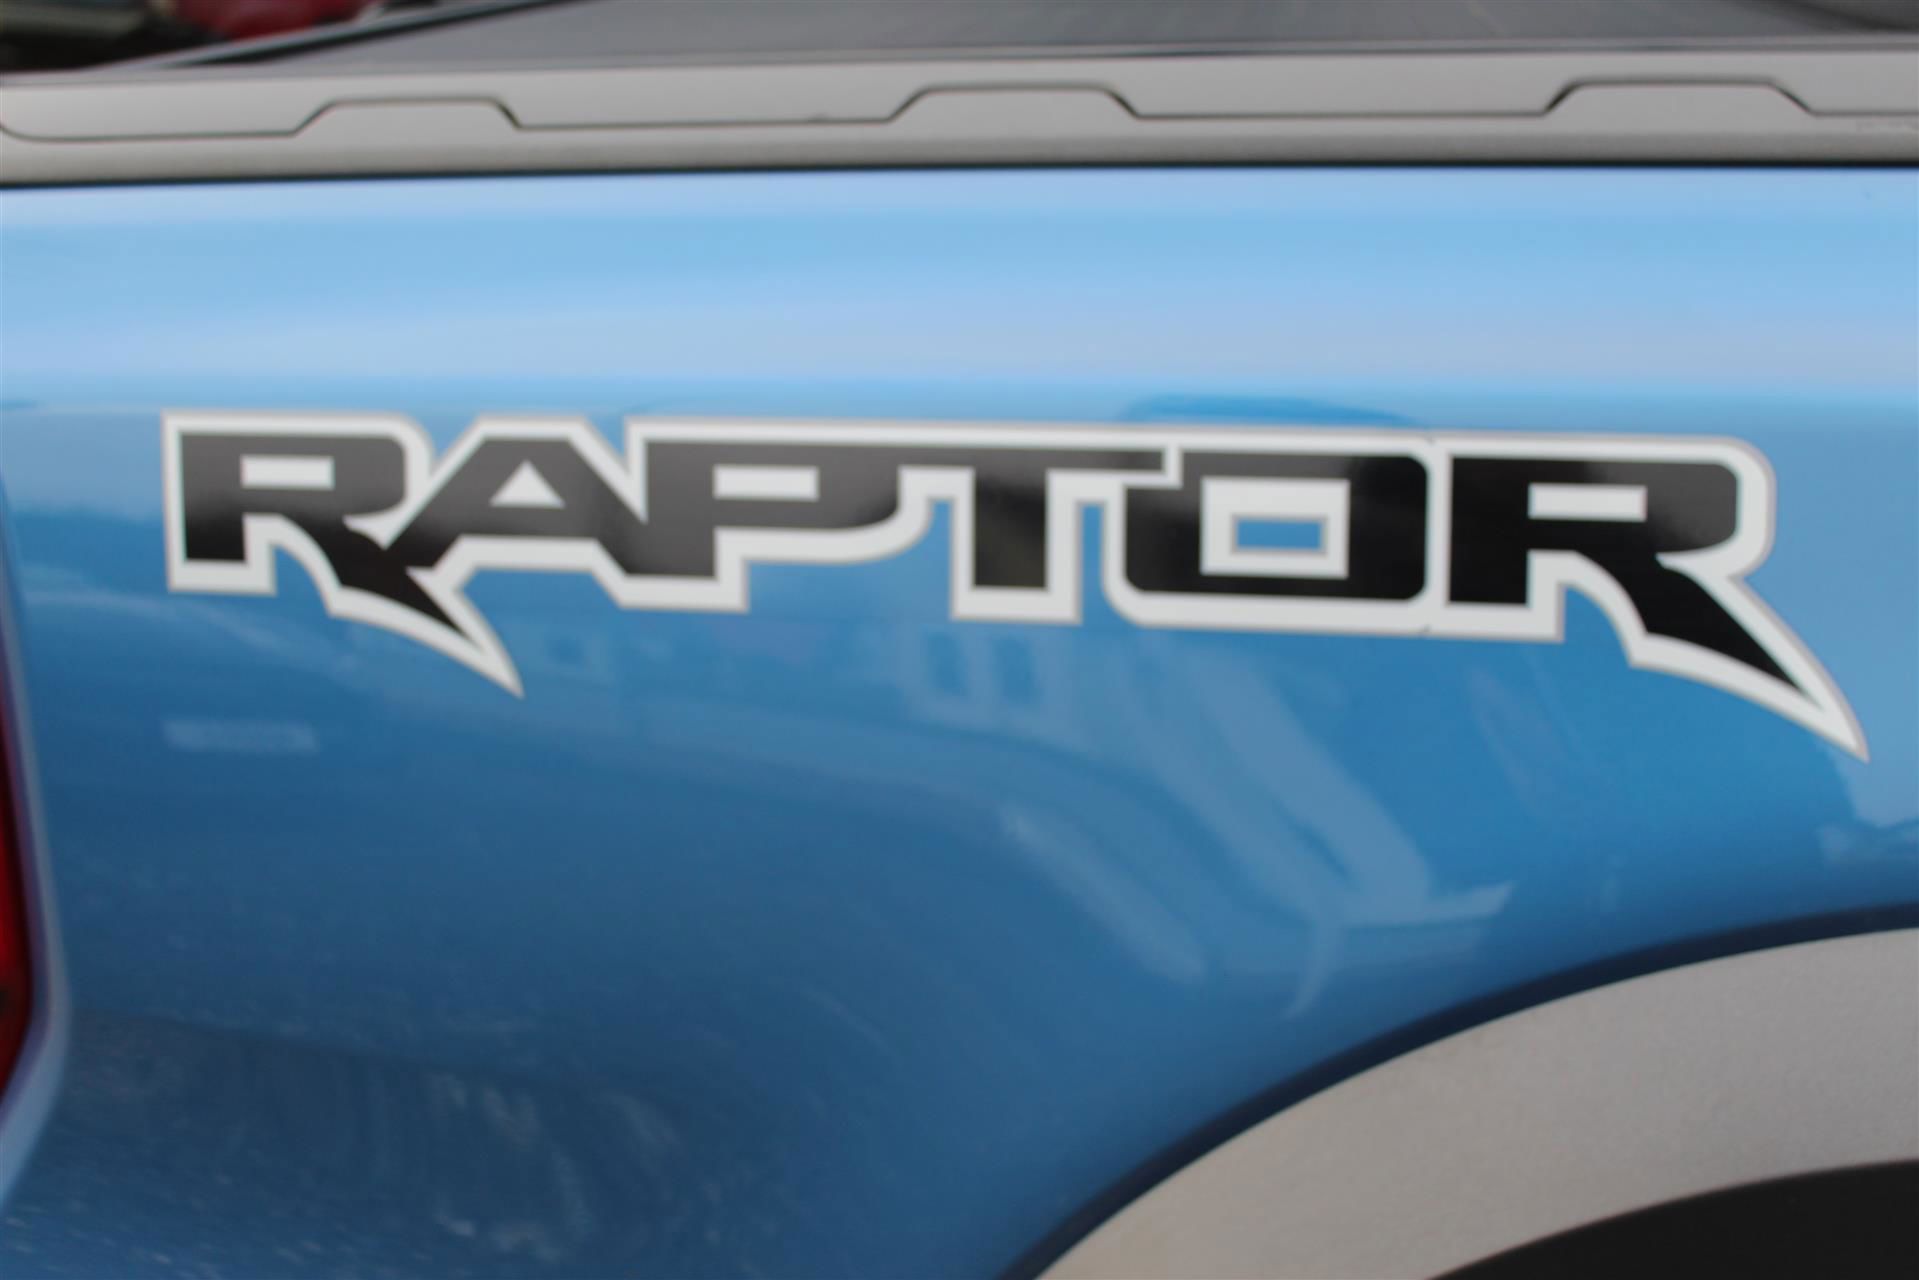 Billede af Ford Ranger 3200kg 2,0 EcoBlue Bi-turbo Raptor 4x4 213HK DobKab 10g Aut.